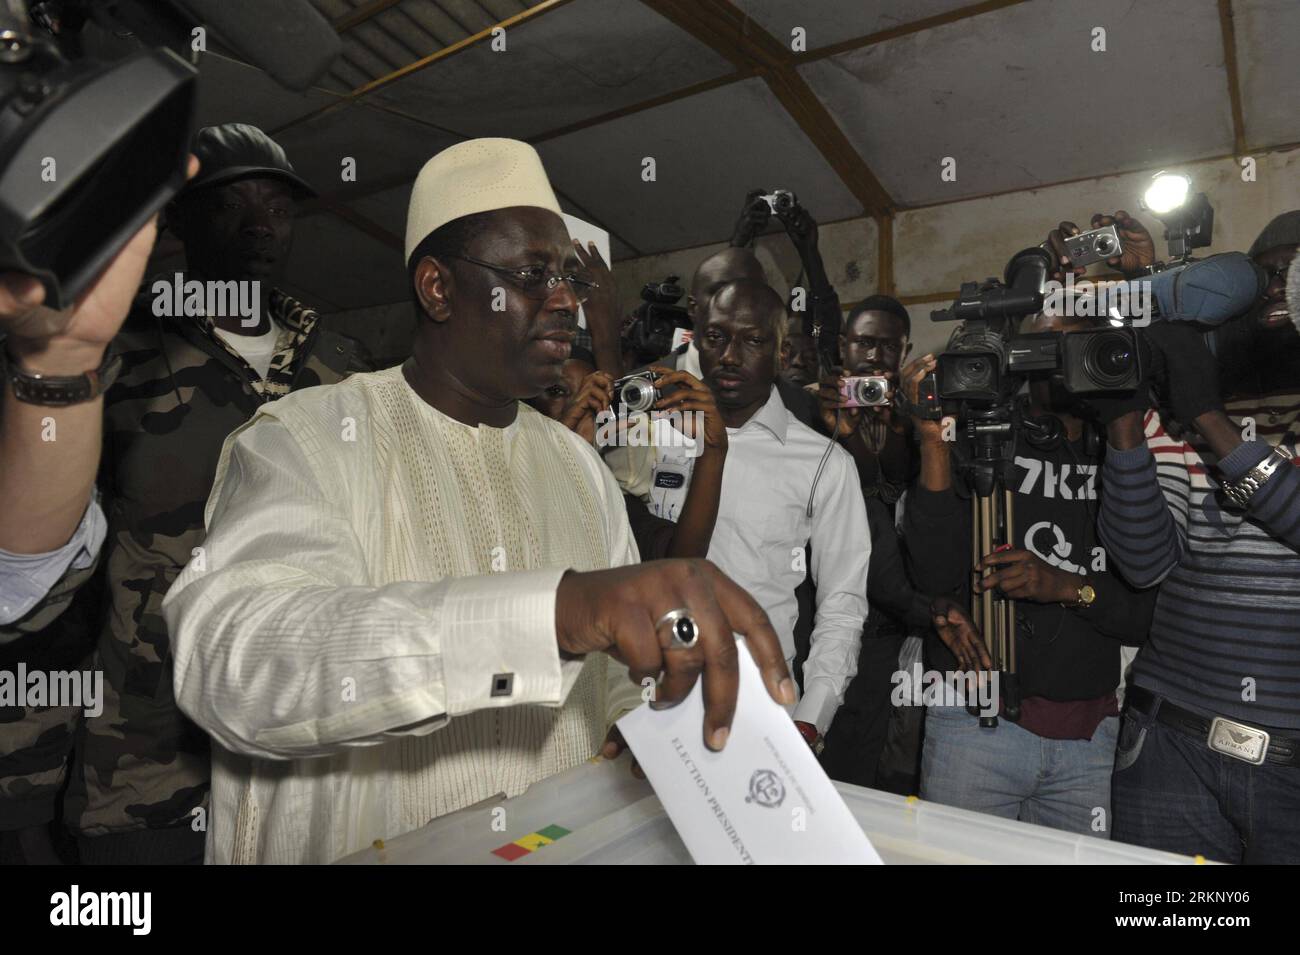 Bildnummer : 57674491 Datum : 25.03.2012 Copyright : imago/Xinhua (120326) -- FATICK, 26 mars 2012 (Xinhua) -- l'ancien Premier ministre sénégalais Macky Sall (2e L) vote dans un bureau de vote de Fatick, Sénégal, le 25 mars 2012. Le président de Segenal, Abdoulaye Wade, a reconnu son défaut lors du second tour présidentiel qui a eu lieu dimanche, et a appelé son rival, l'ancien Premier ministre Macky Sall, pour le féliciter de sa victoire, ont déclaré les médias d'État dimanche. (Xinhua) SENEGAL-POLITICS-VOTE PUBLICATIONxNOTxINxCHN People Politik Wahlen Senegal premiumd Präsidentschaftswahlen xcb x0x 2012 quer 5767 Banque D'Images